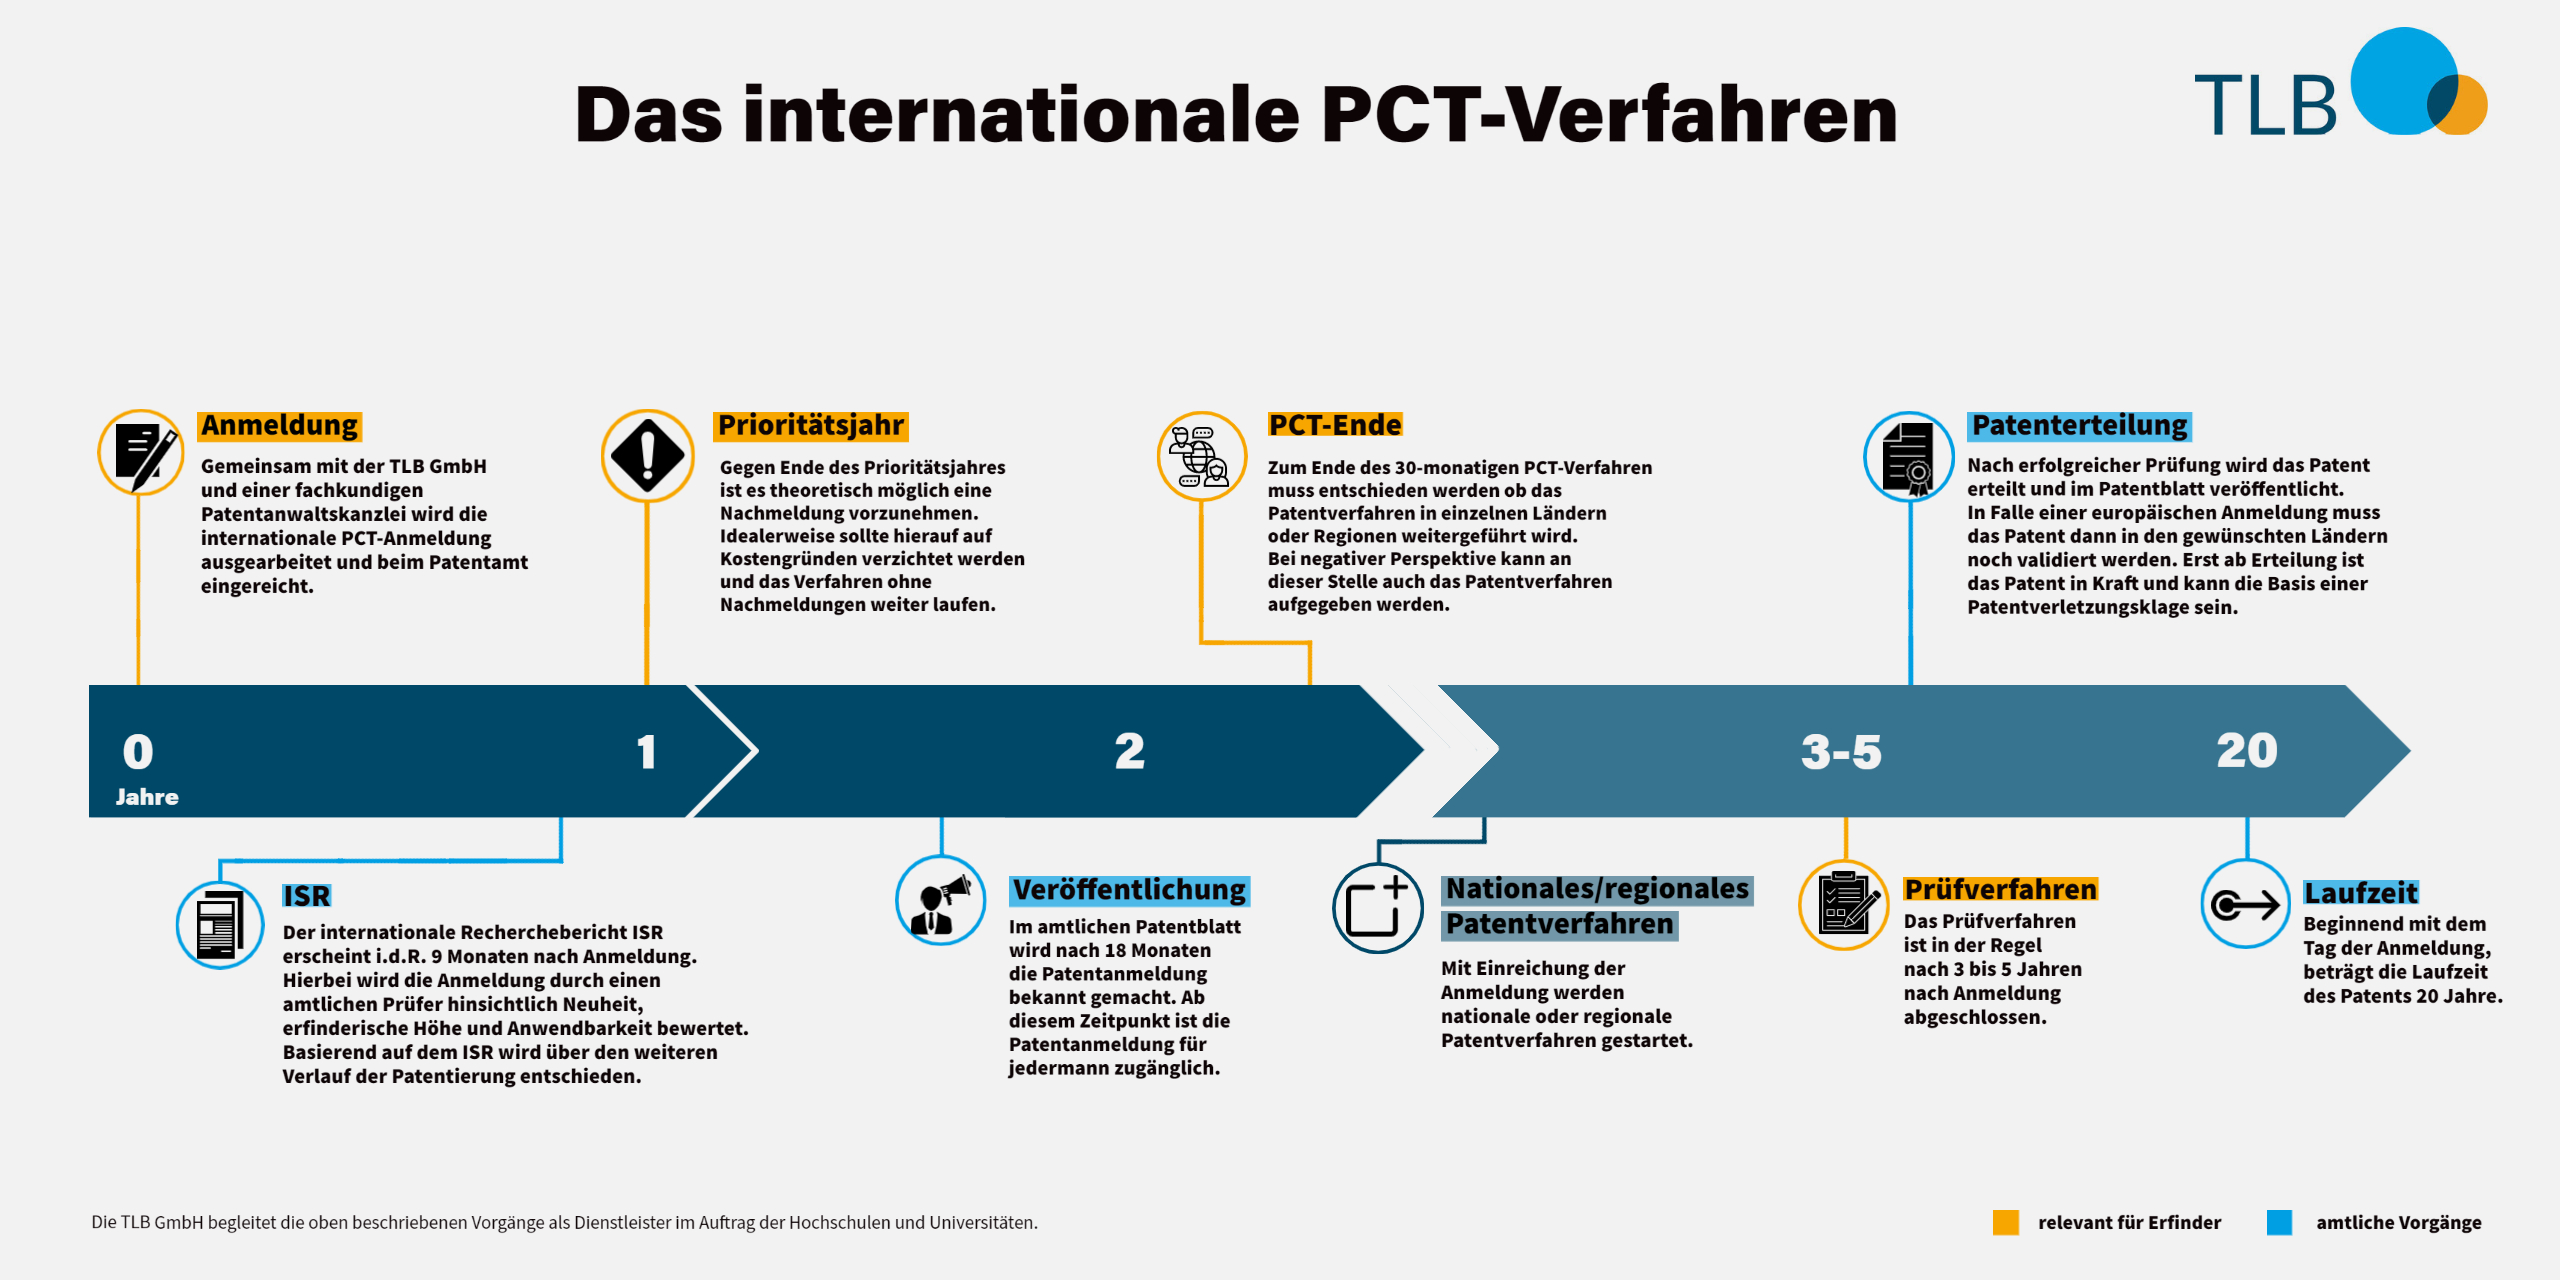 Überblick über das internationale PCT-Verfahren